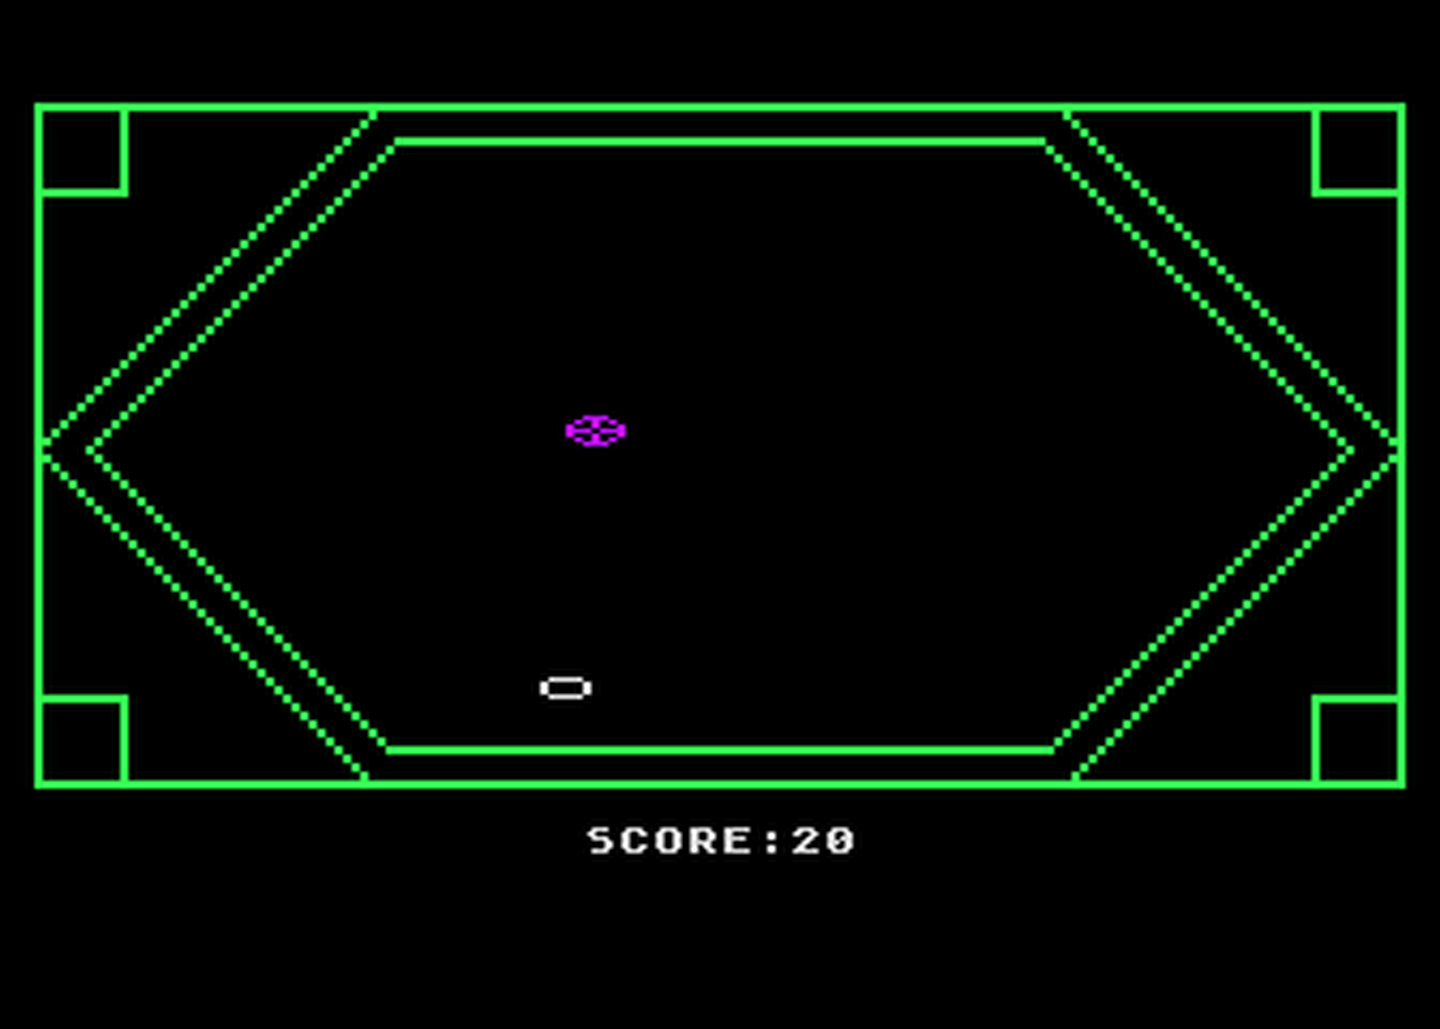 Atari GameBase Raiders_of_Space (No_Publisher) 1983